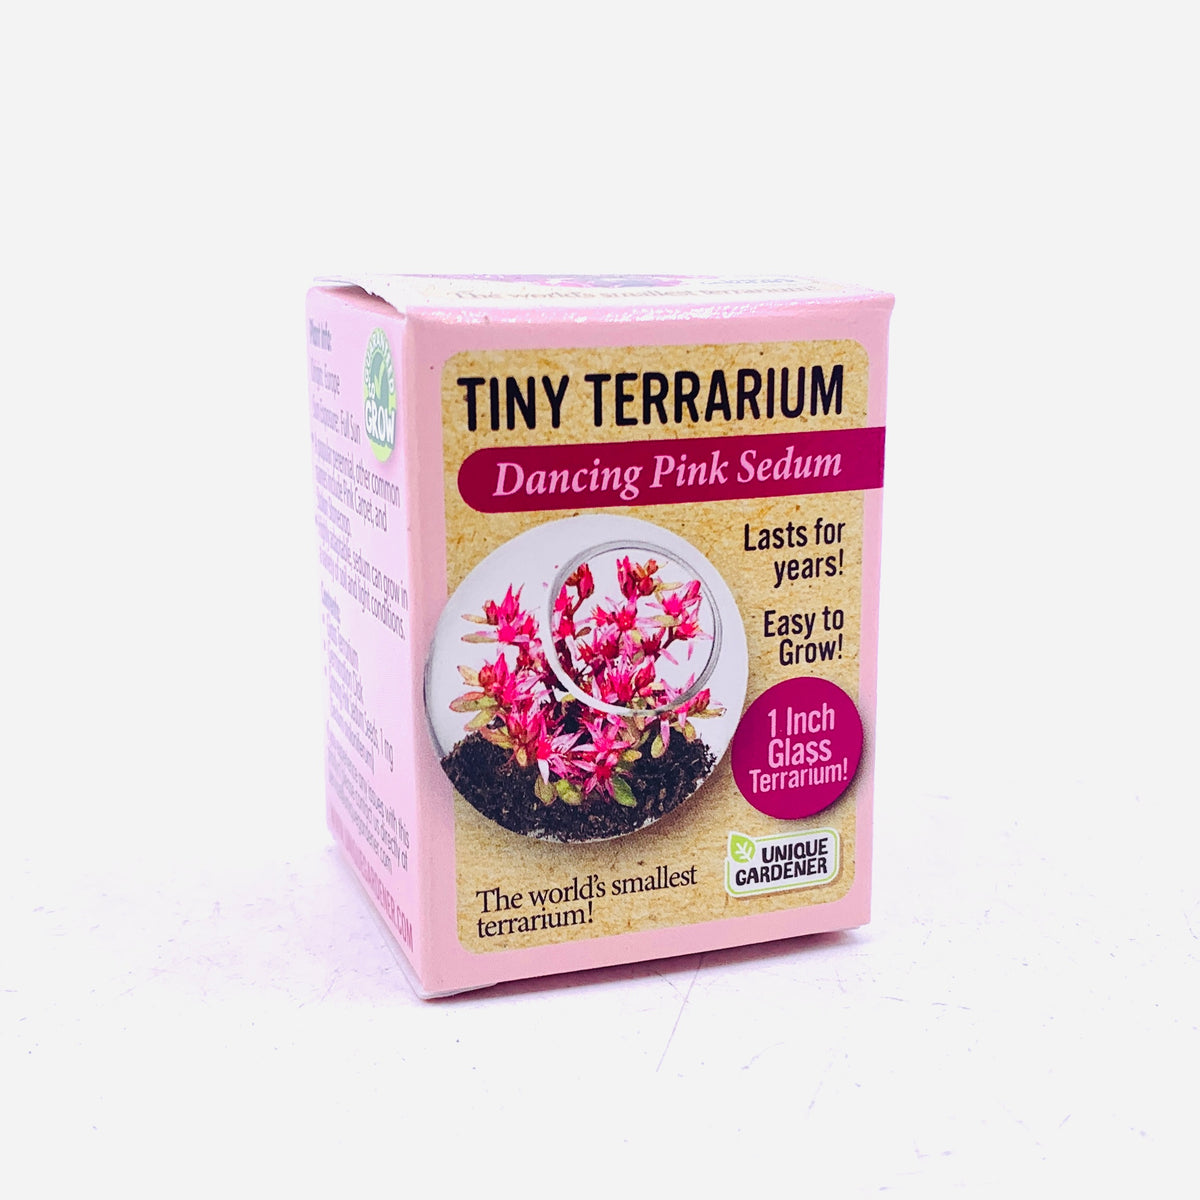 Tiny Terrarium, Dancing Pink Sedum